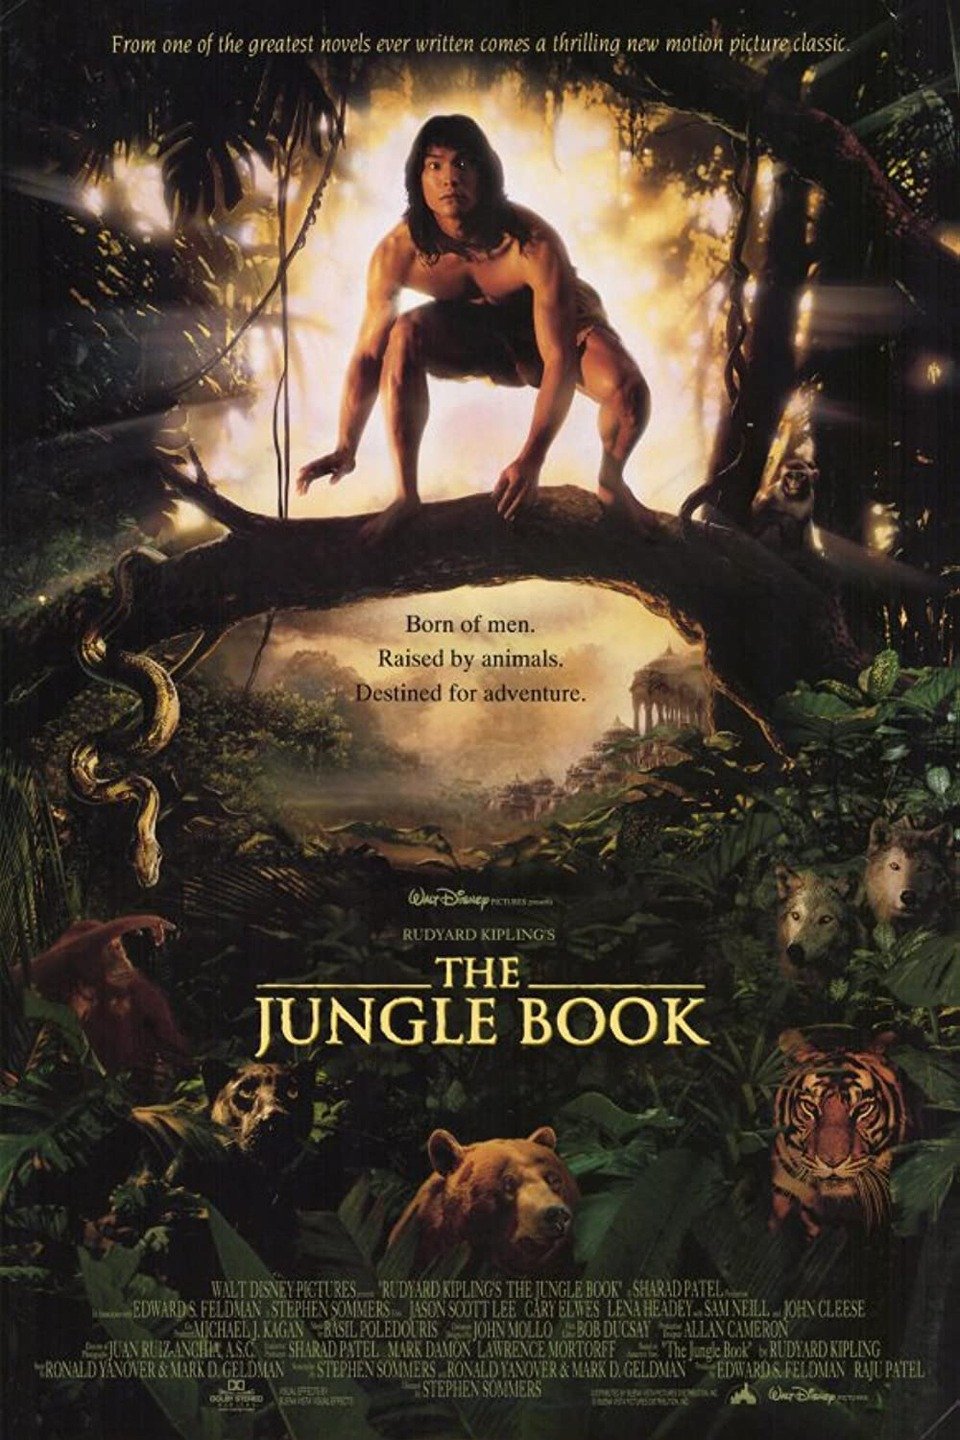 Rudyard Kiplings The Jungle Book pic photo